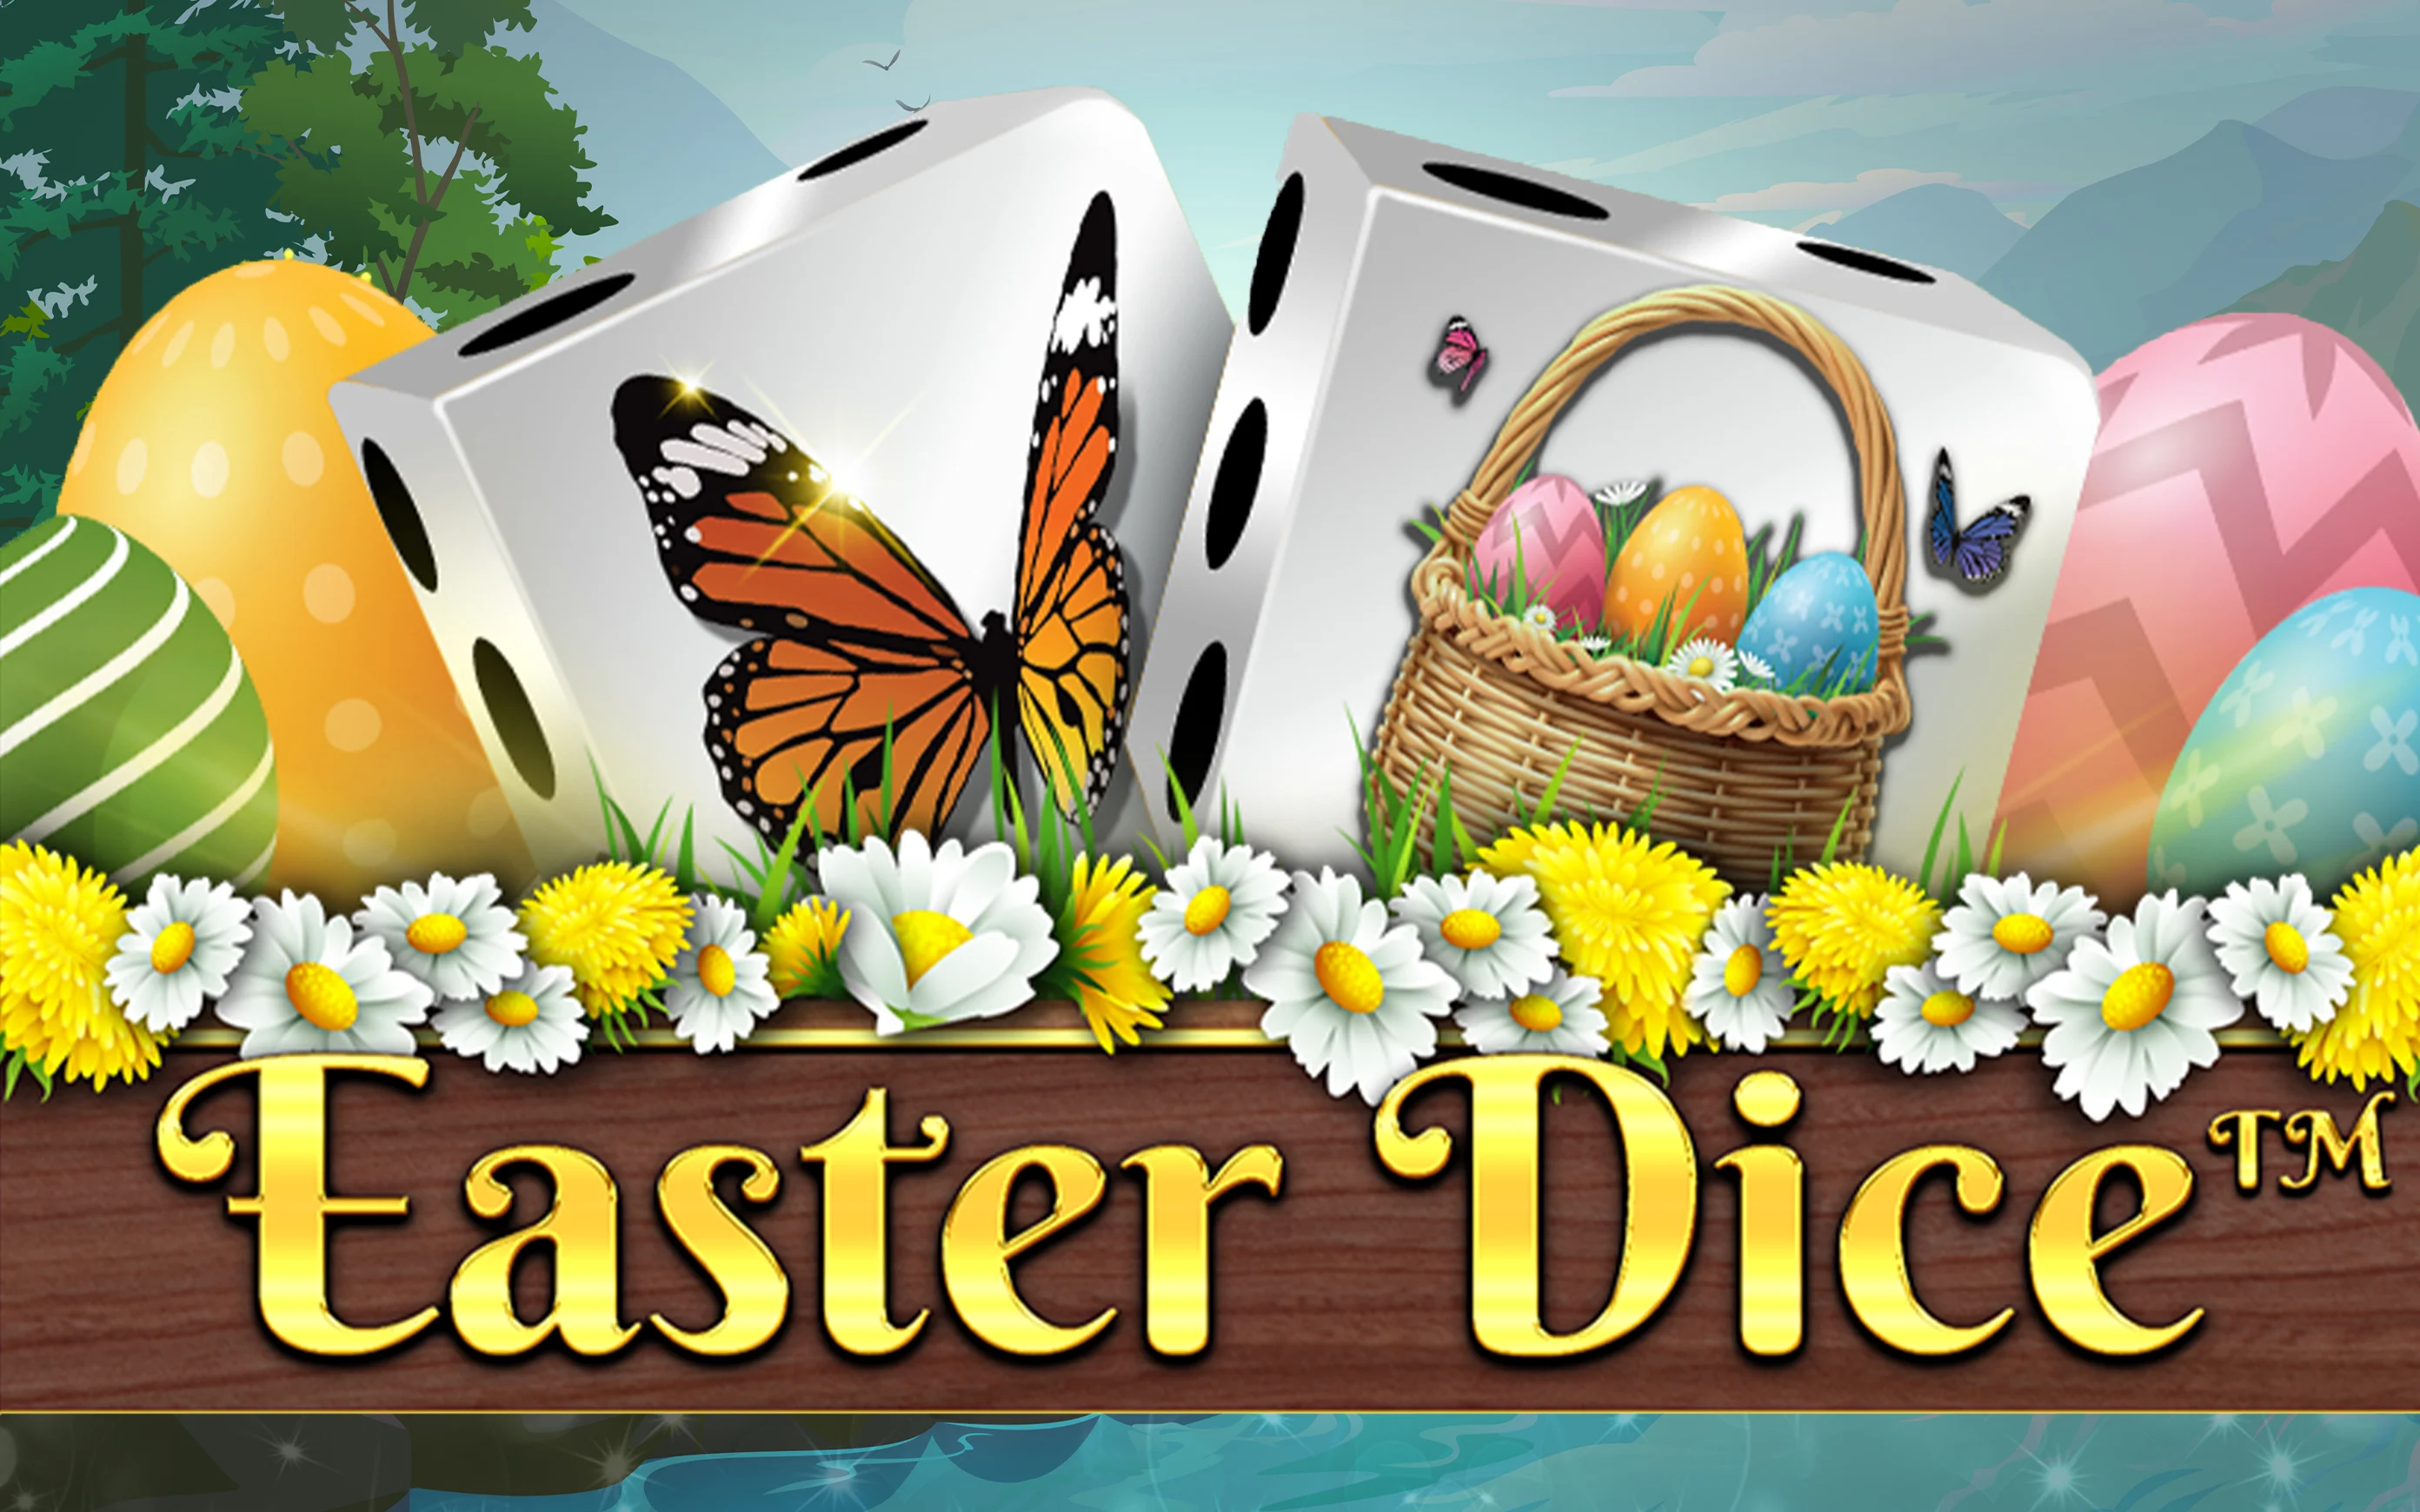 Starcasino.be online casino üzerinden Easter Dice oynayın